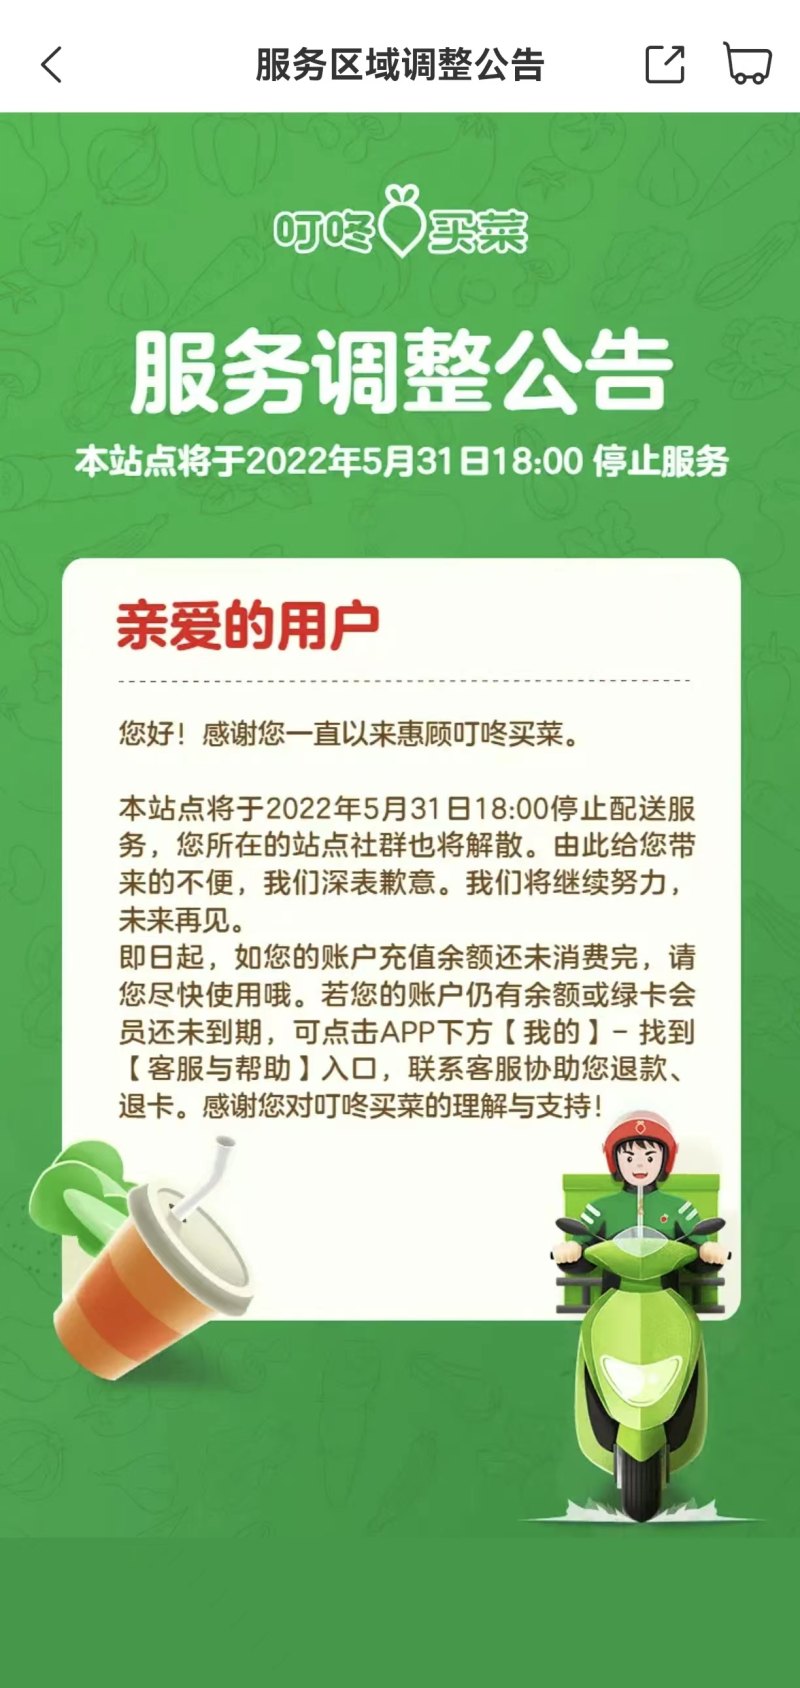 叮咚买菜唐山、滁州、珠海站点将于5月底停止服务，官方称系常规优化与调整